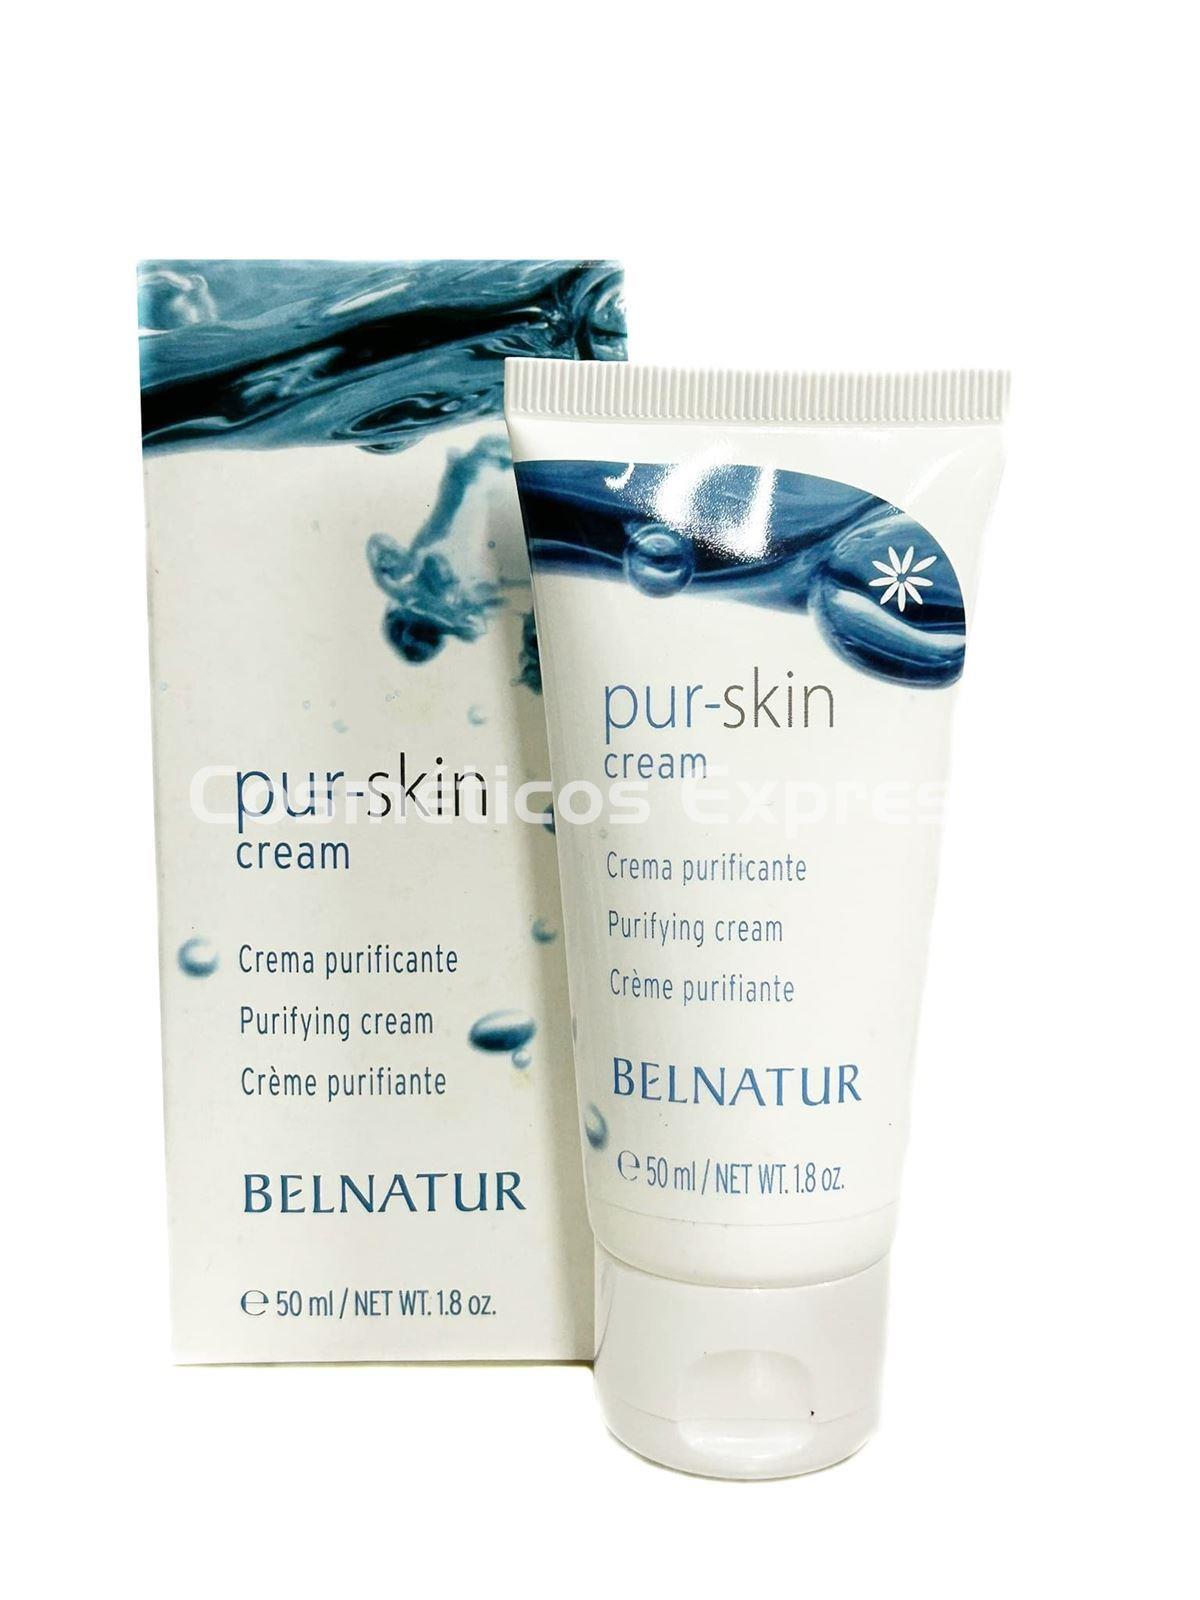 Belnatur Mascarilla Purificante Pur-Skin 75 ml. - Imagen 1